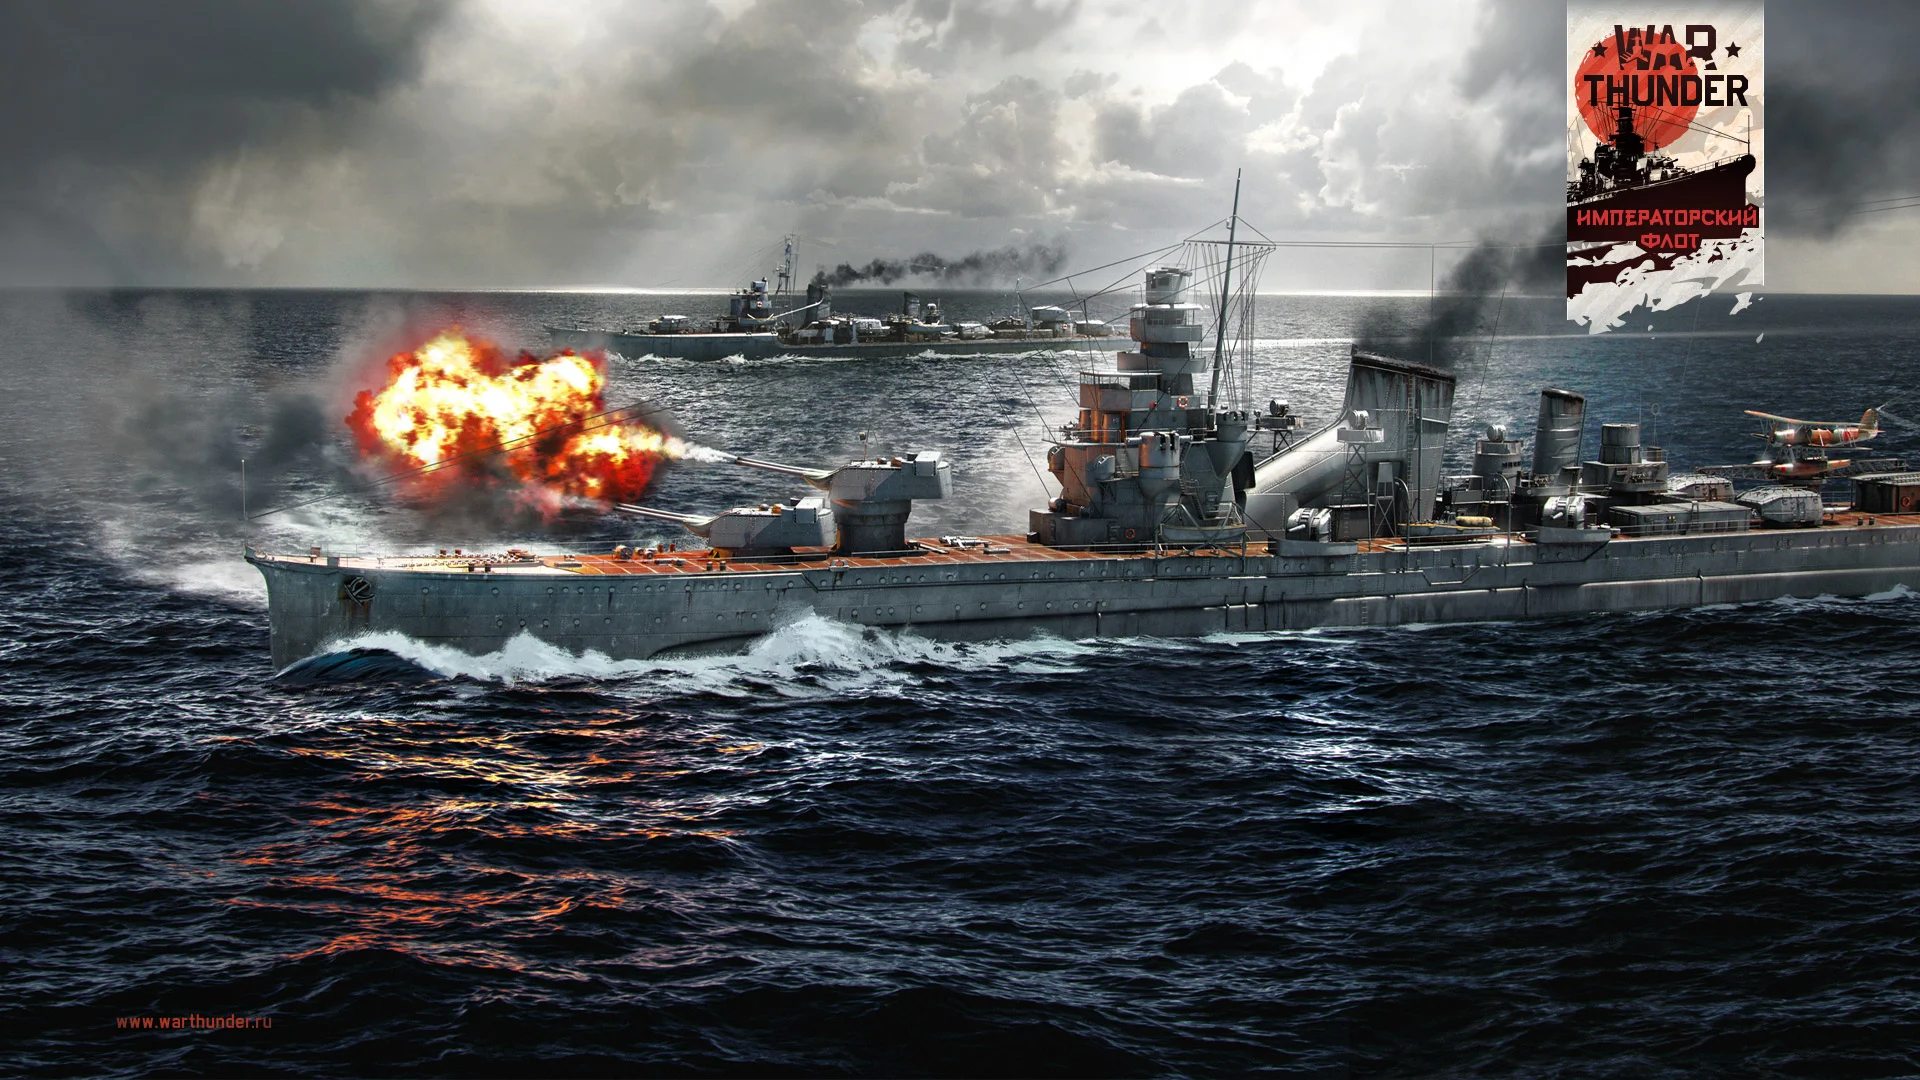 В War Thunder вышло обновление 1.89 «Императорский флот», добавившее очень много новой техники - фото 1